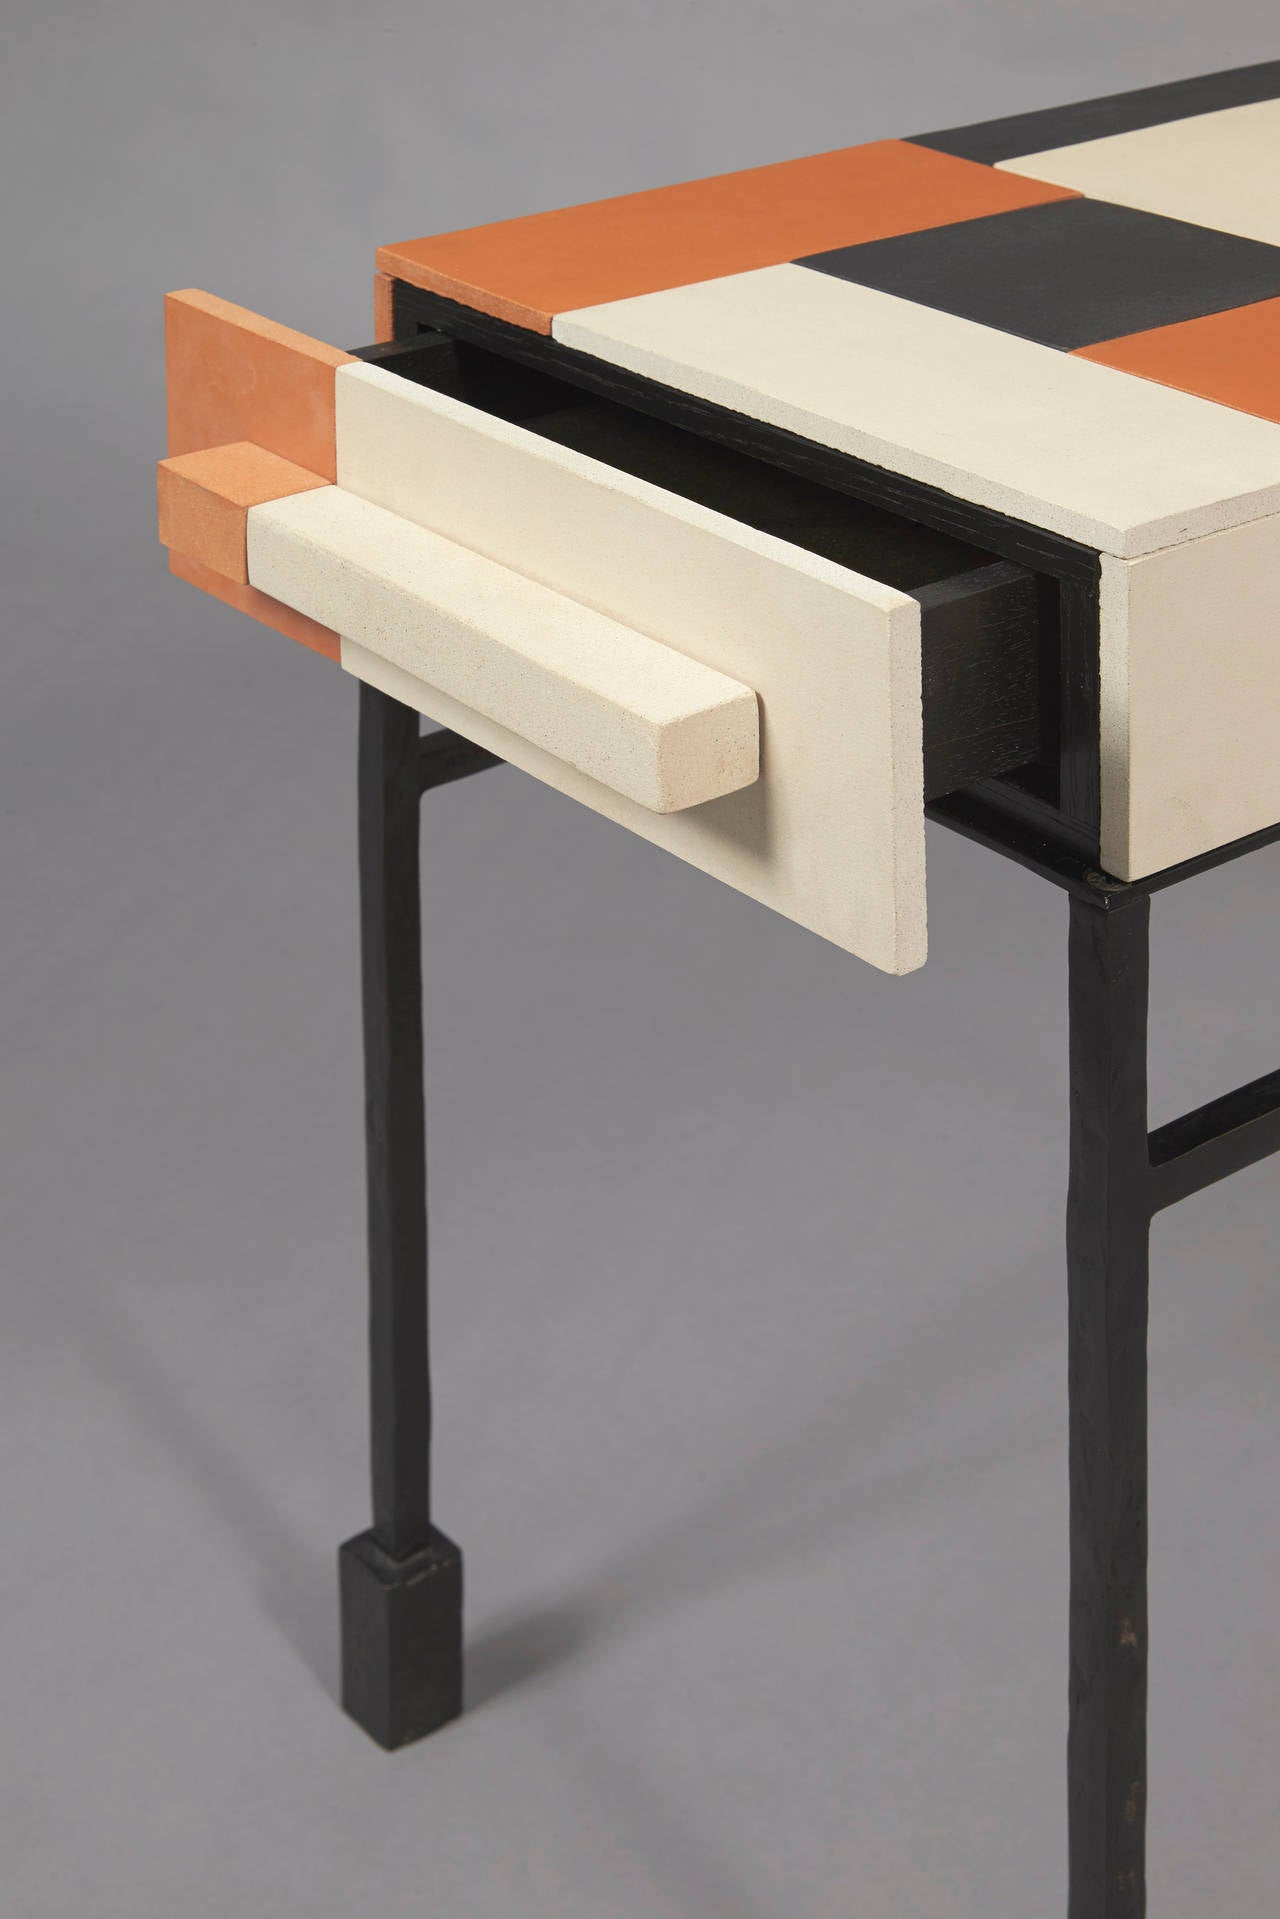 Terre cuite
Édition Cat-Berro, 2013
table d'appoint.
Un tiroir. 
Terracotta. Pieds en bronze patiné.
Mesures : L 14